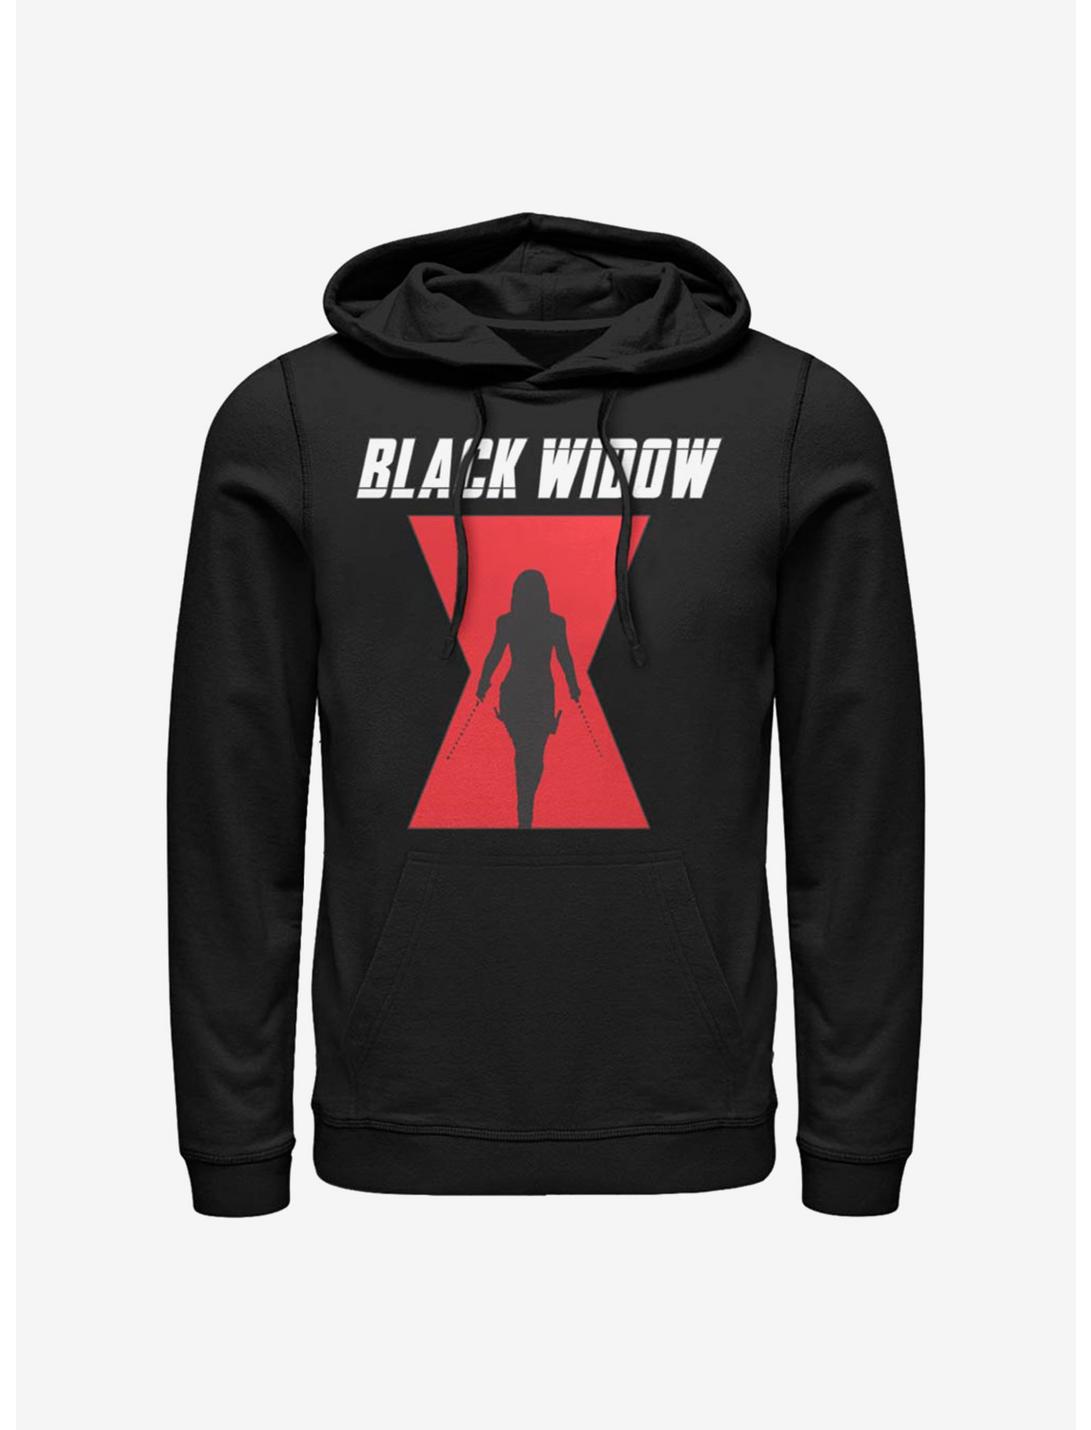 Marvel Black Widow Logo Hoodie, BLACK, hi-res